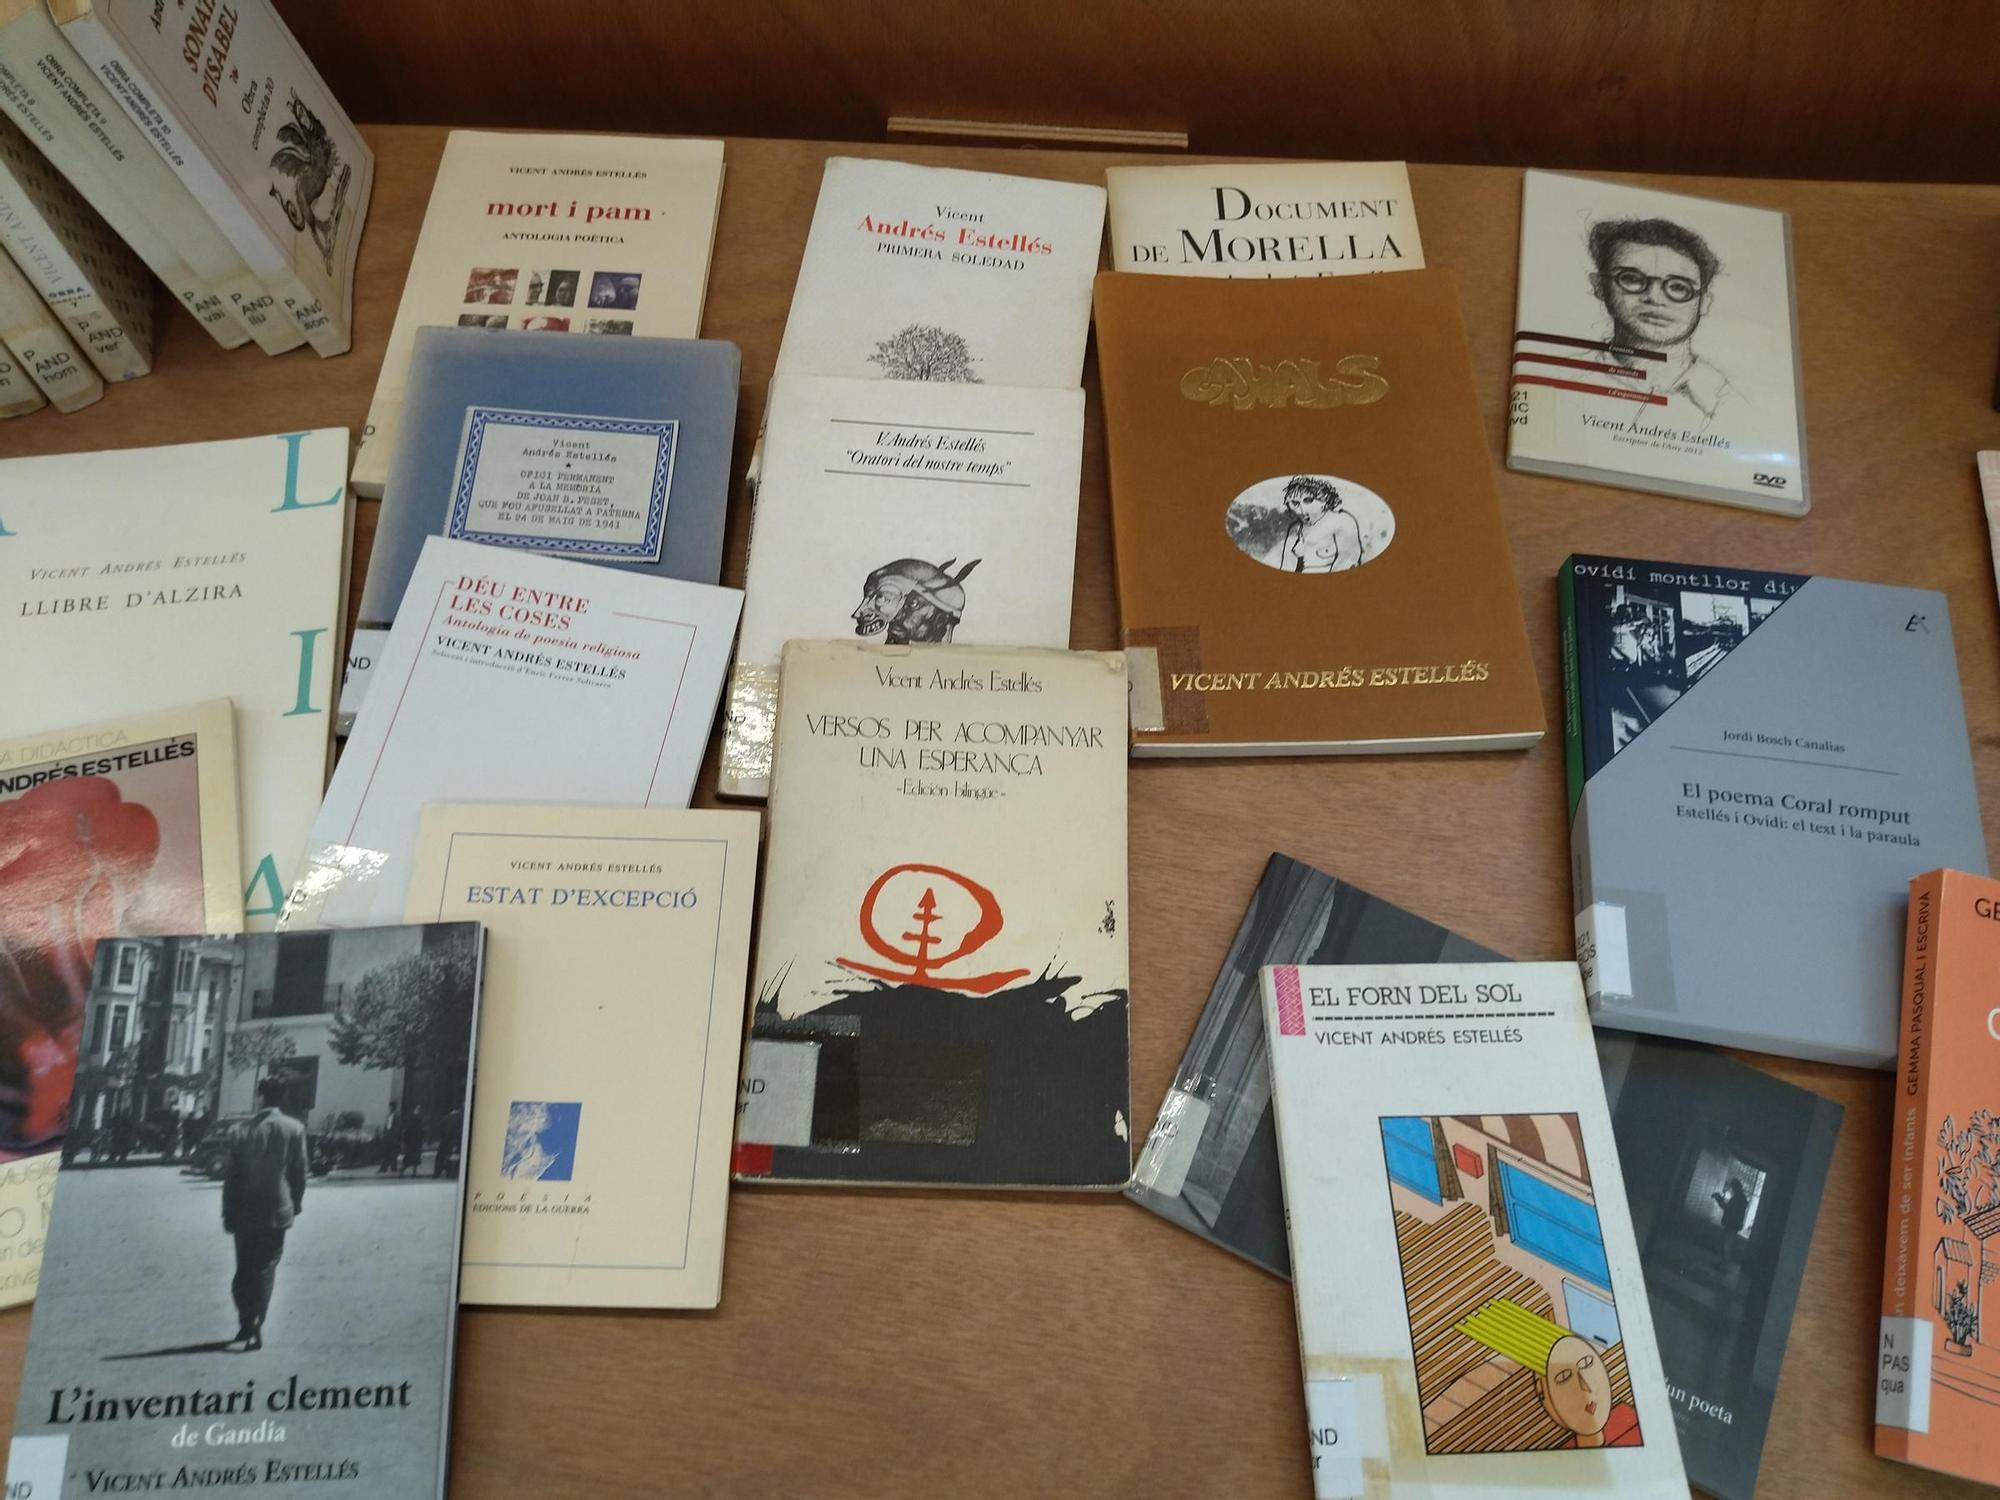 Historia, libros y recuerdos: la magnífica biblioteca Carmen Alemany de Pego (imágenes)